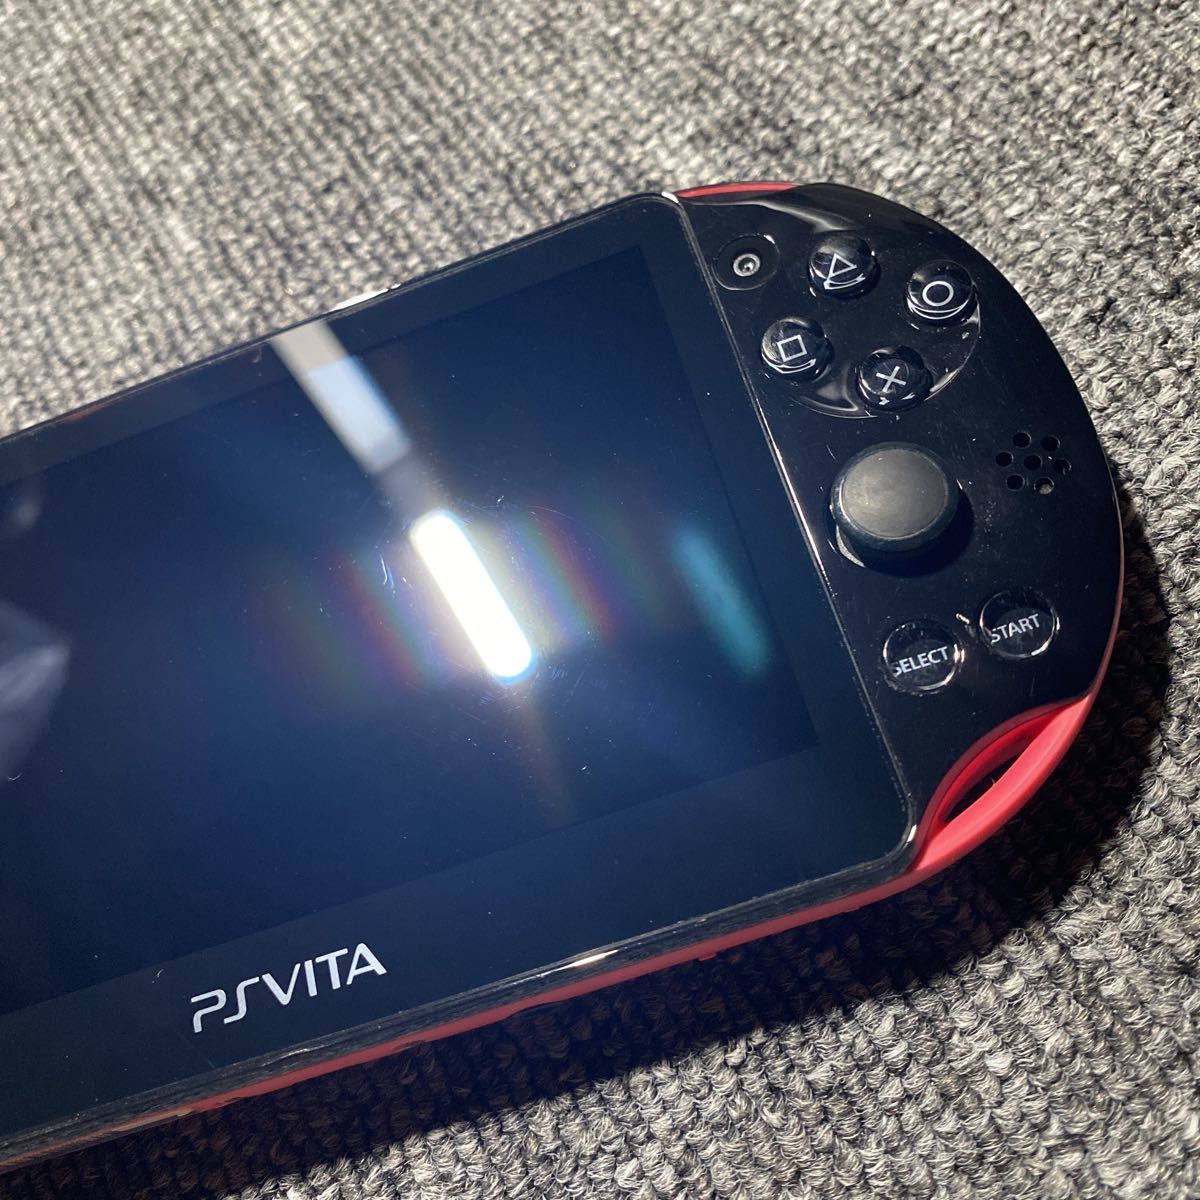 PS Vita PCH-2000 ピンク ブラック 本体のみ-